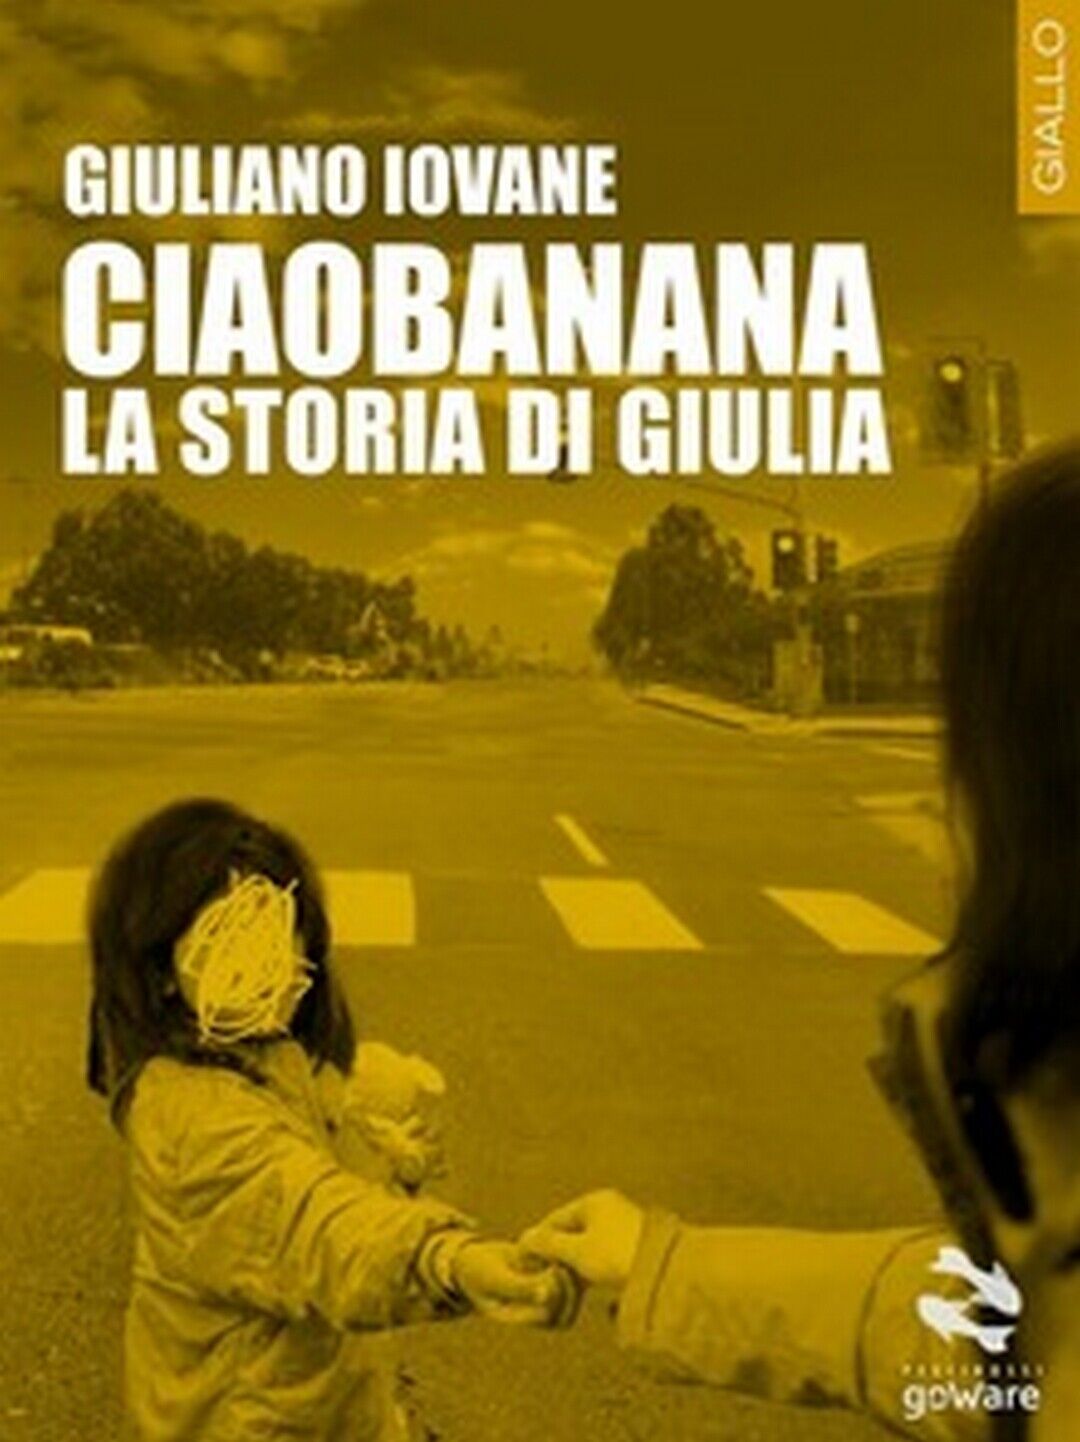 Ciaobanana. La storia di Giulia  di Giuliano Iovane,  2016,  Goware